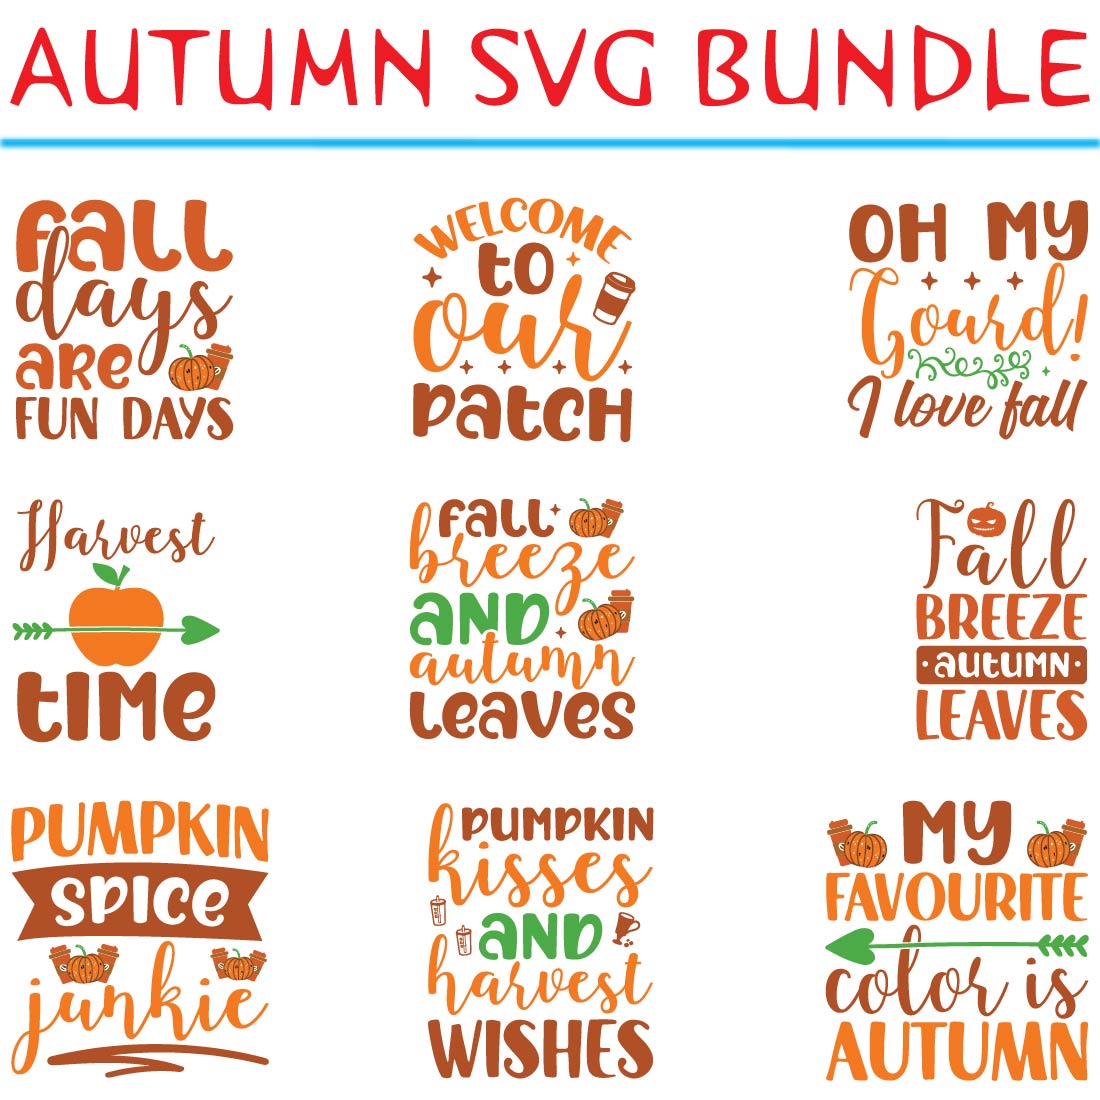 Autumn SVG Bundle preview image.